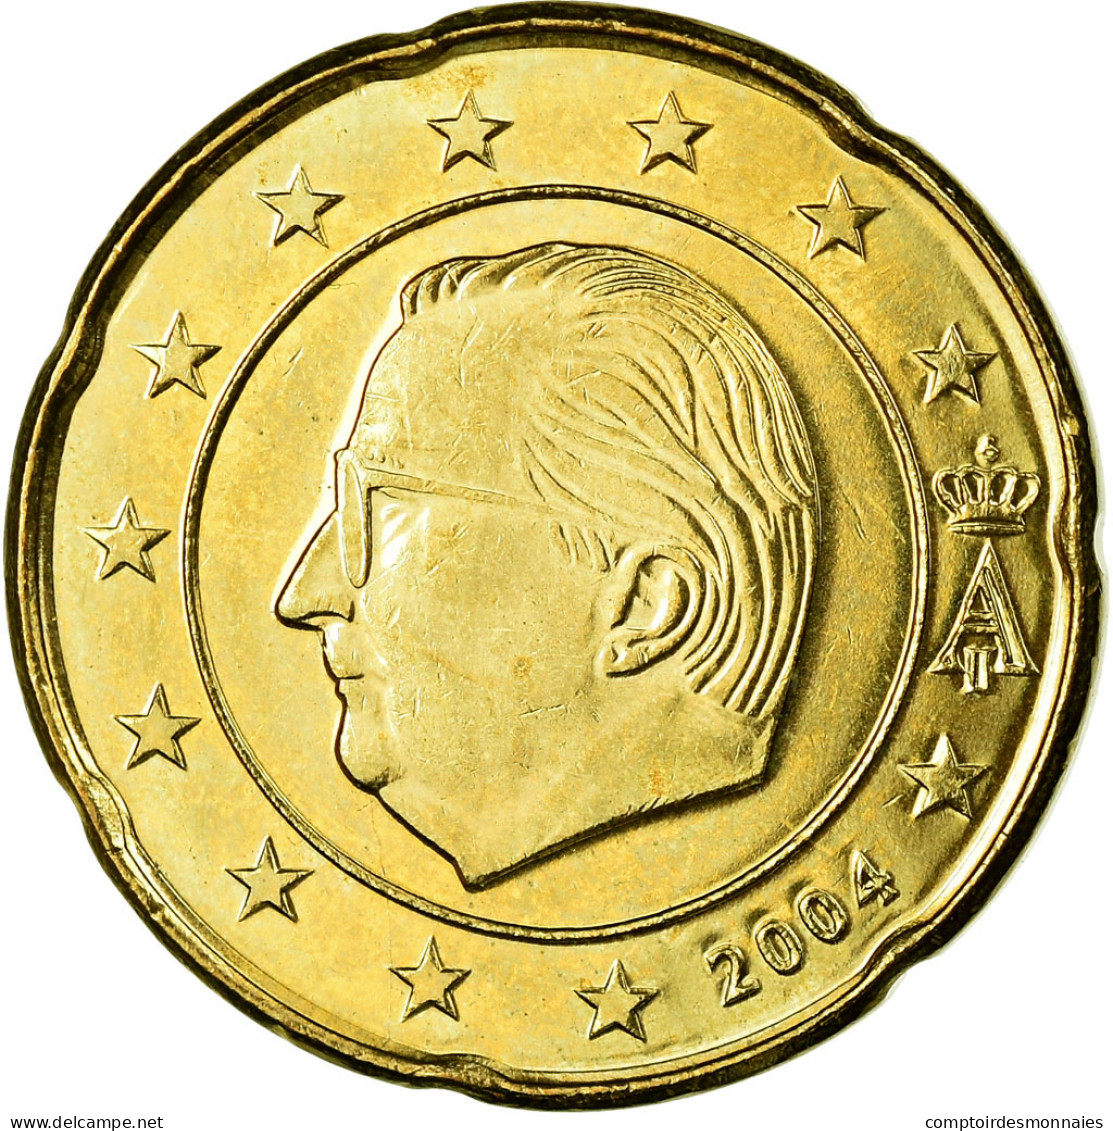 Belgique, 20 Euro Cent, 2004, SUP, Laiton, KM:228 - Belgique